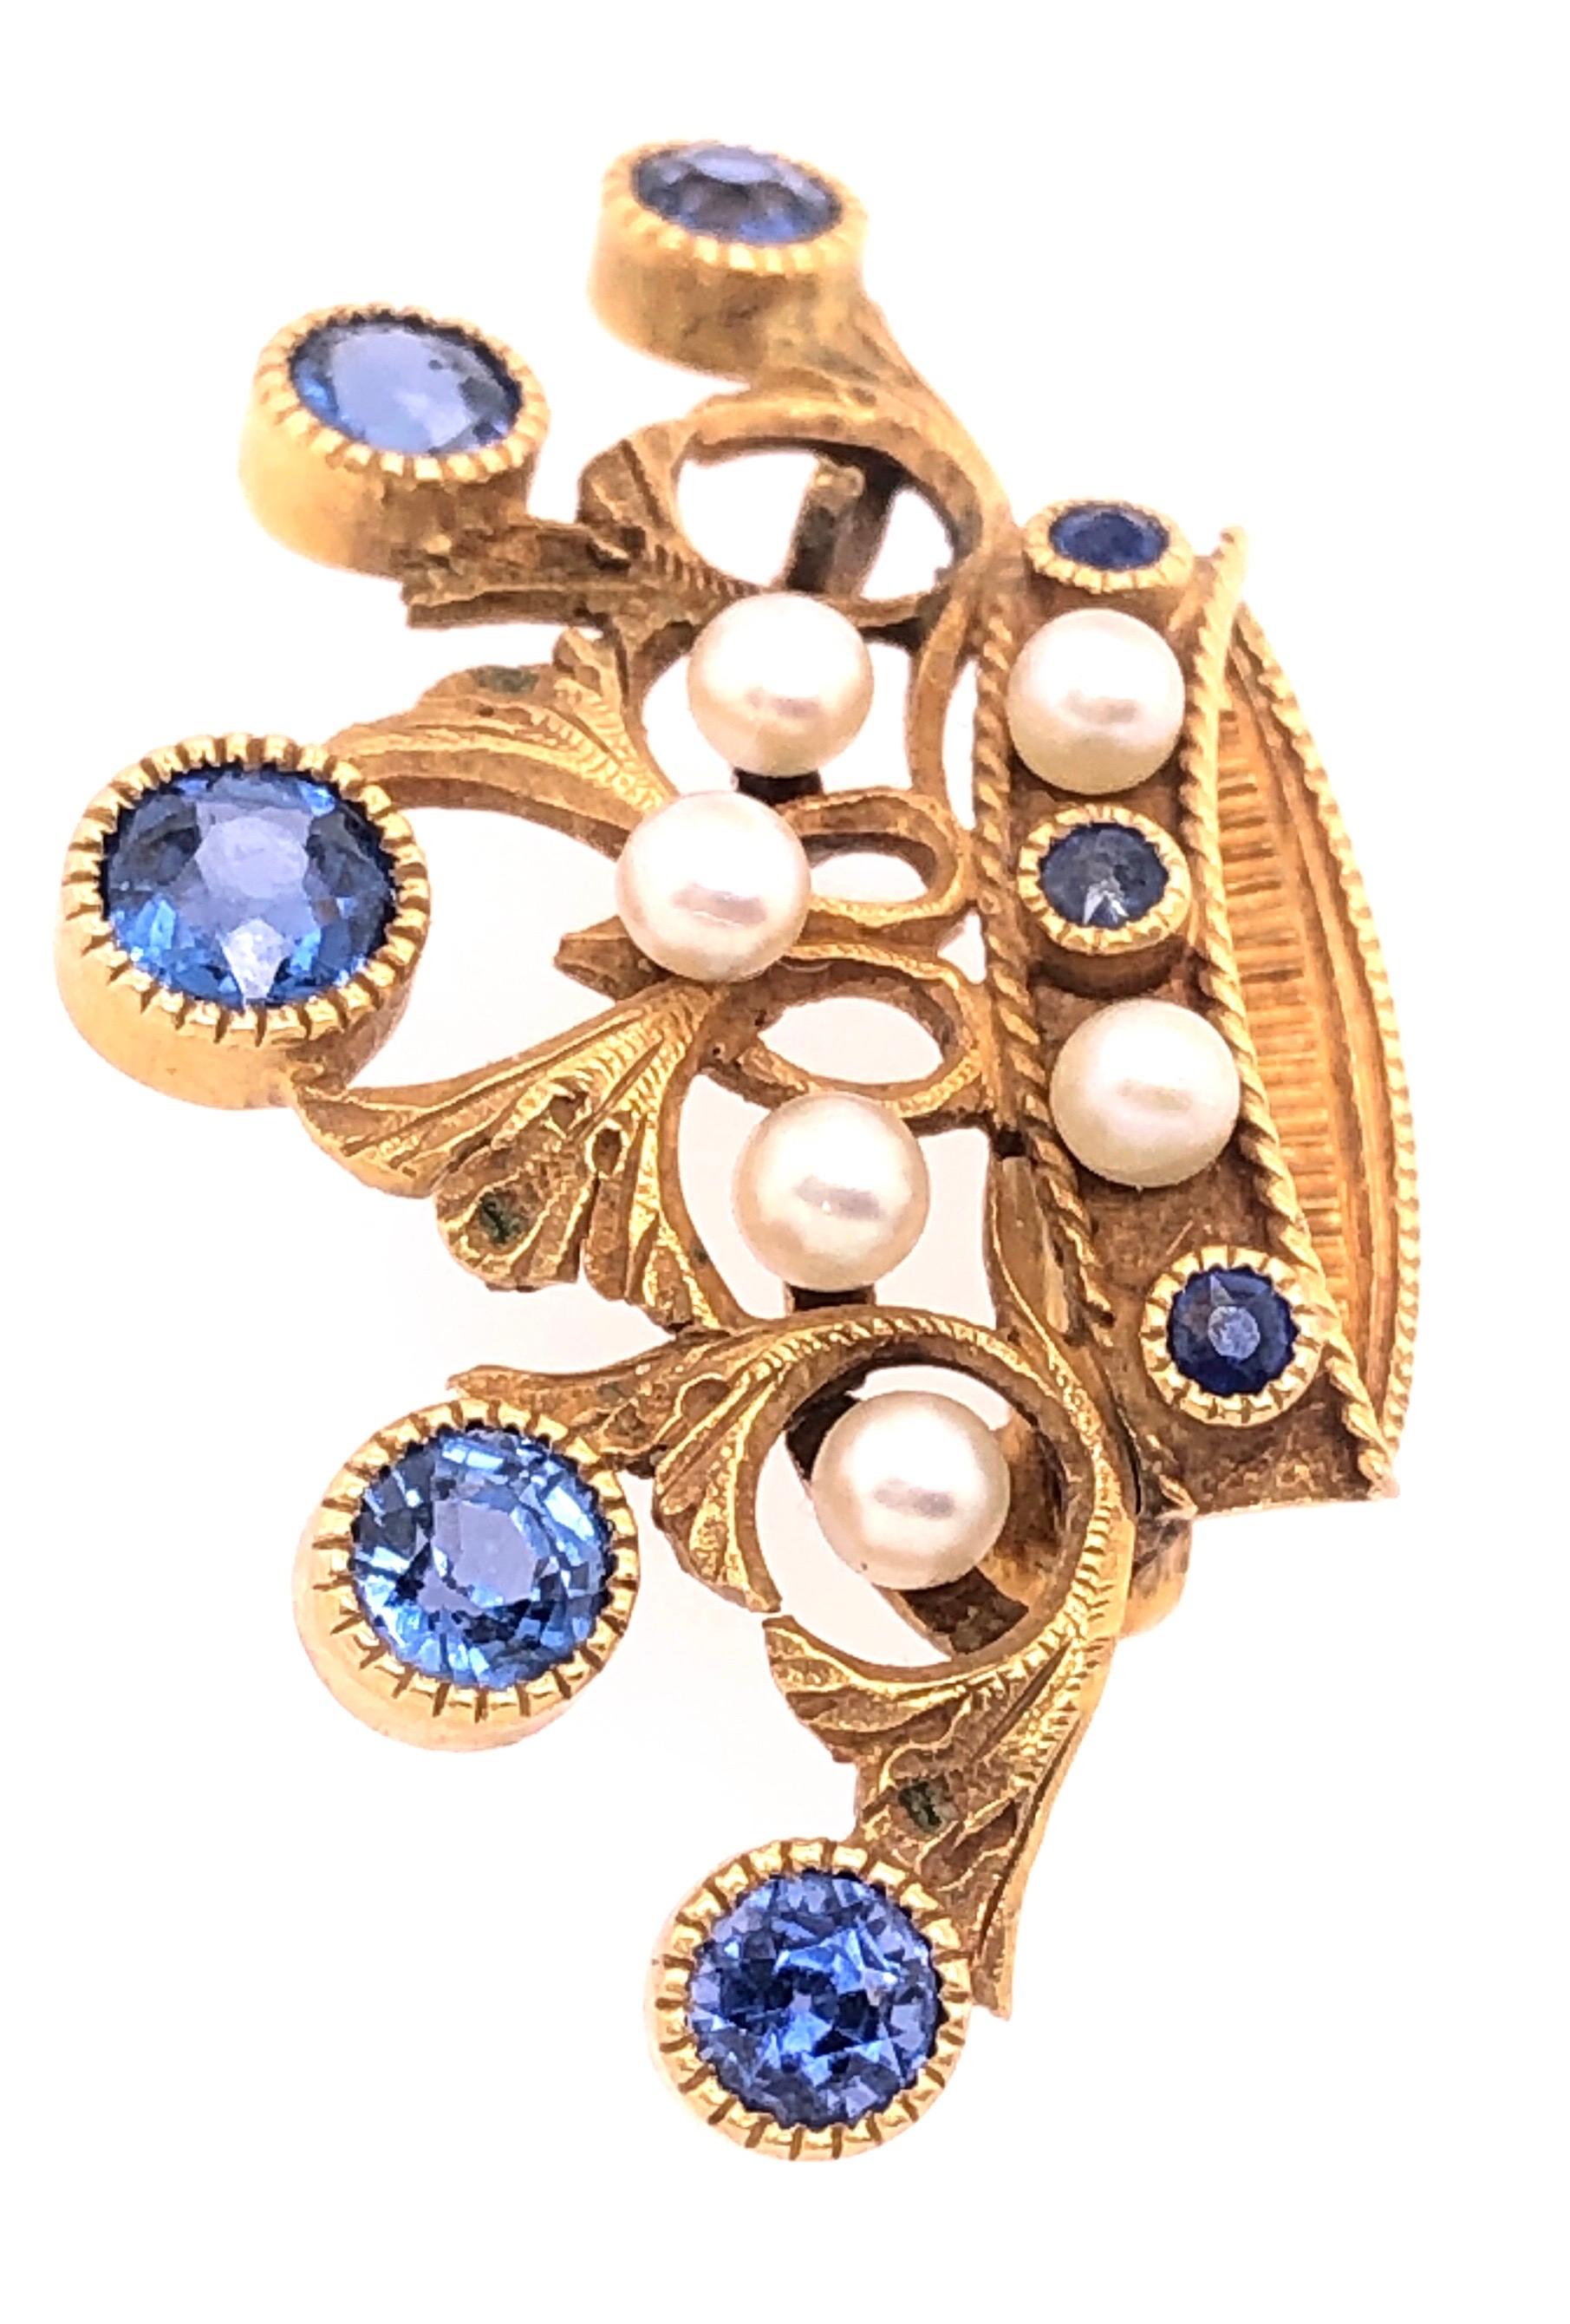 14Kt Gelbgold Tiara Crown Pin oder Brosche mit Steinen und Perlen. 19.25 x 33,5 mm in der Breite. Perlen mit einem Durchmesser von ca. 3 mm. Der größere Saphir ist 5 mm groß. Mit unbekanntem Herstellerstempel. 
